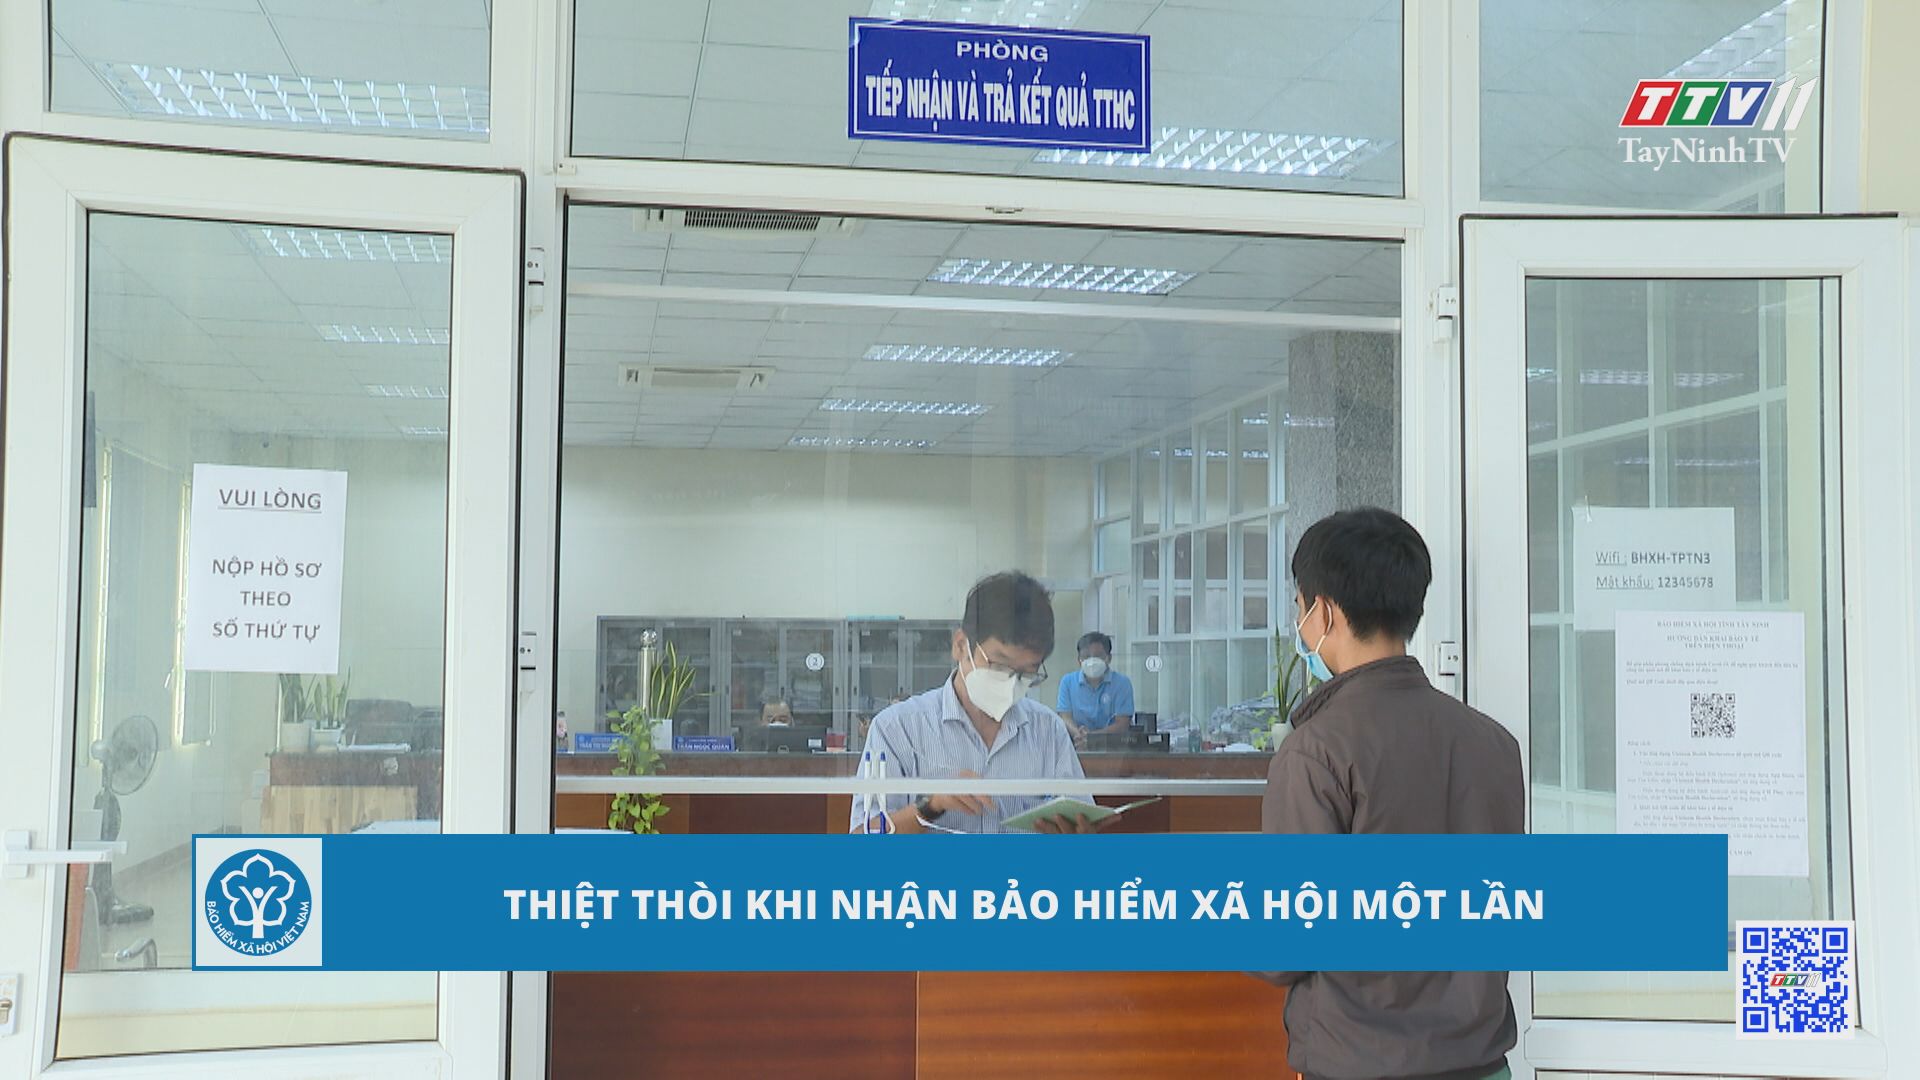 Thiệt thòi khi nhận BHXH một lần | Bảo hiểm xã hội tỉnh Tây Ninh | TayNinhTV